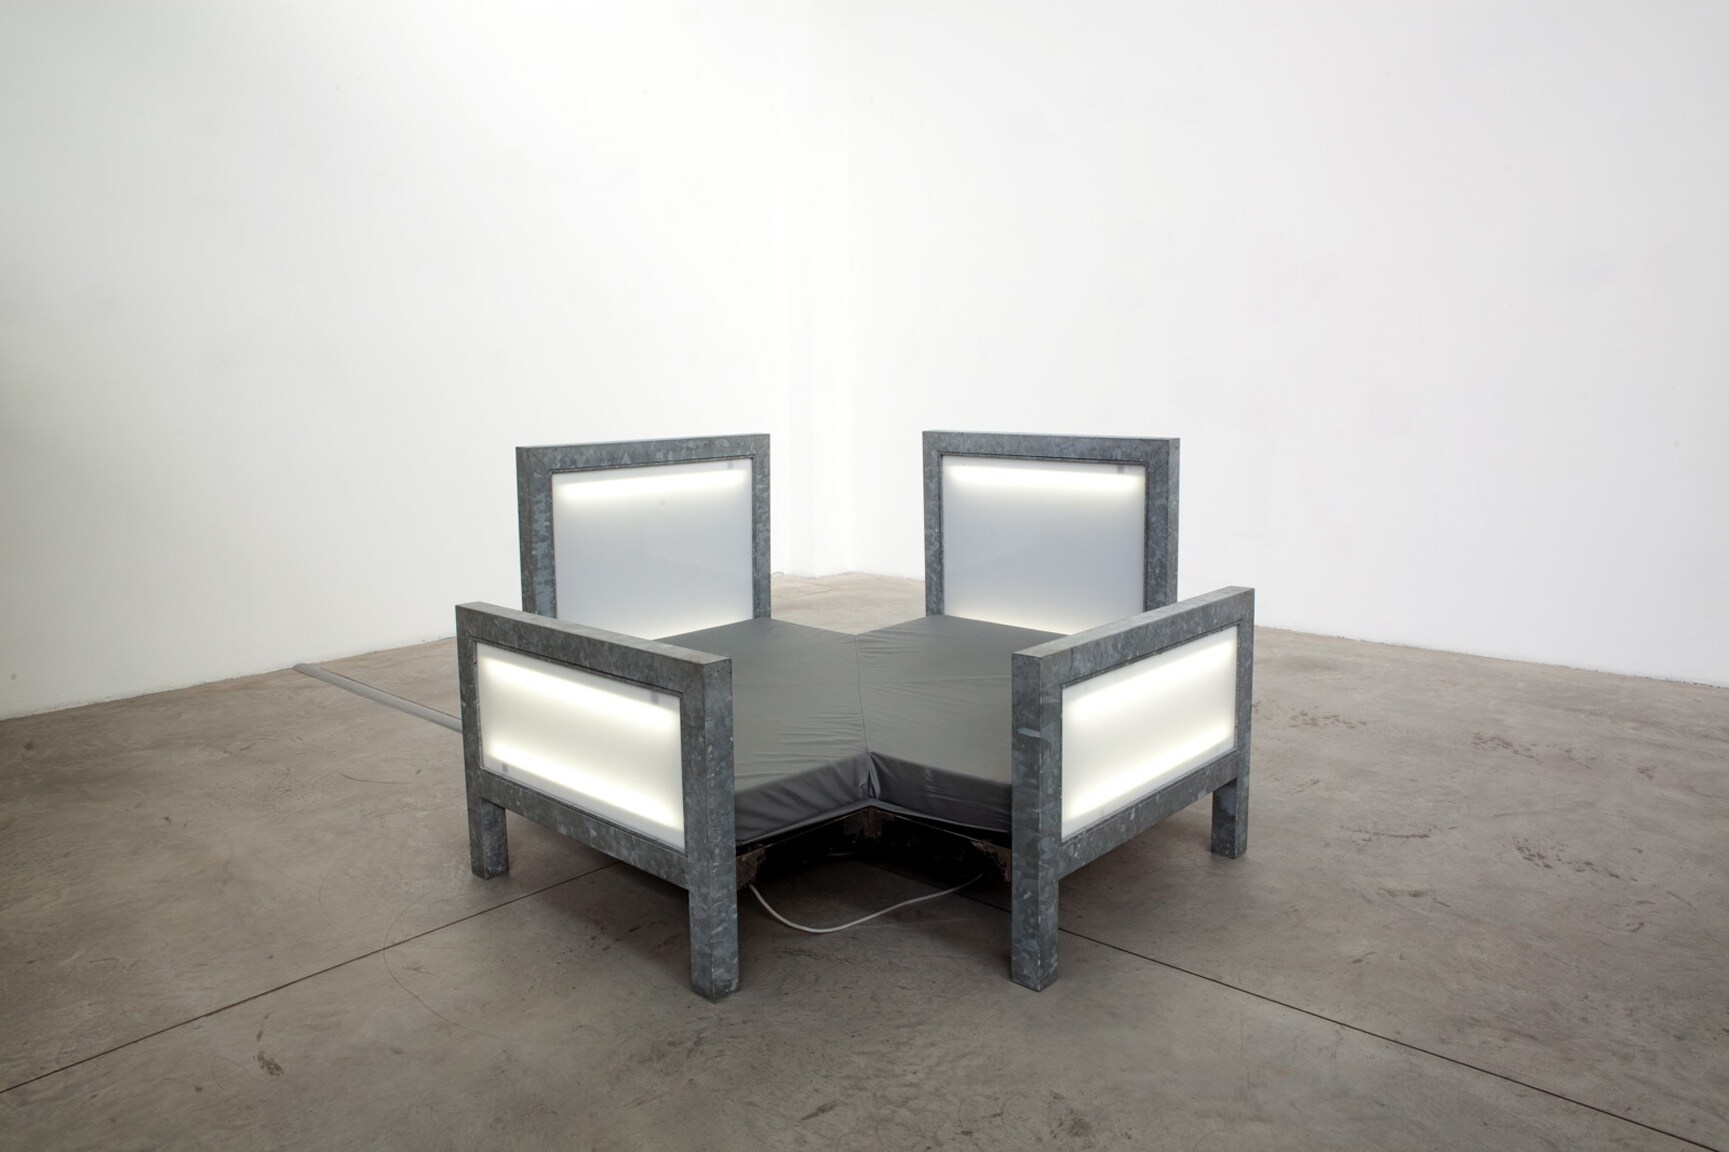 Vito Acconci "Multi-Bed" 1992. Ferro e lamiera zincata, pannelli in plexiglass specchiante, pannelli riflettori in plexiglassi, luci al neon, gommapiuma, nylon, cm 120 x 216 x 216 cm.